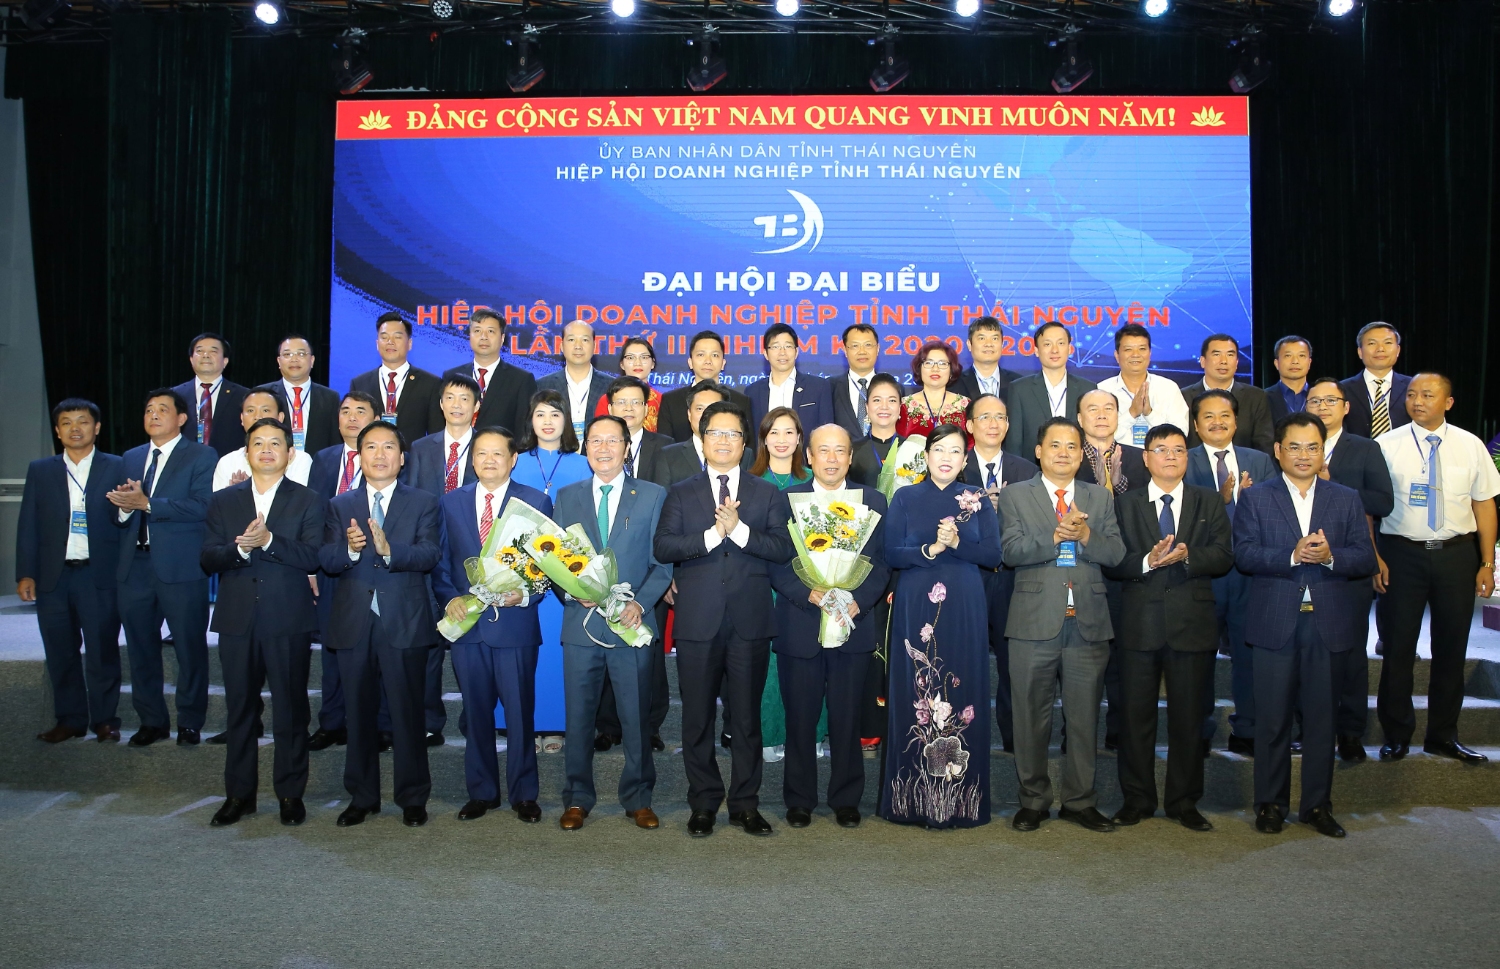 Chủ tịch Nguyễn Kim Hùng tham dự Đại hội đại biểu hiệp hội doanh nghiệp tỉnh Thái Nguyên lần II, nhiệm kỳ 2020 - 2025, “ Đoàn Kết- Trí Tuệ - Đổi Mới"